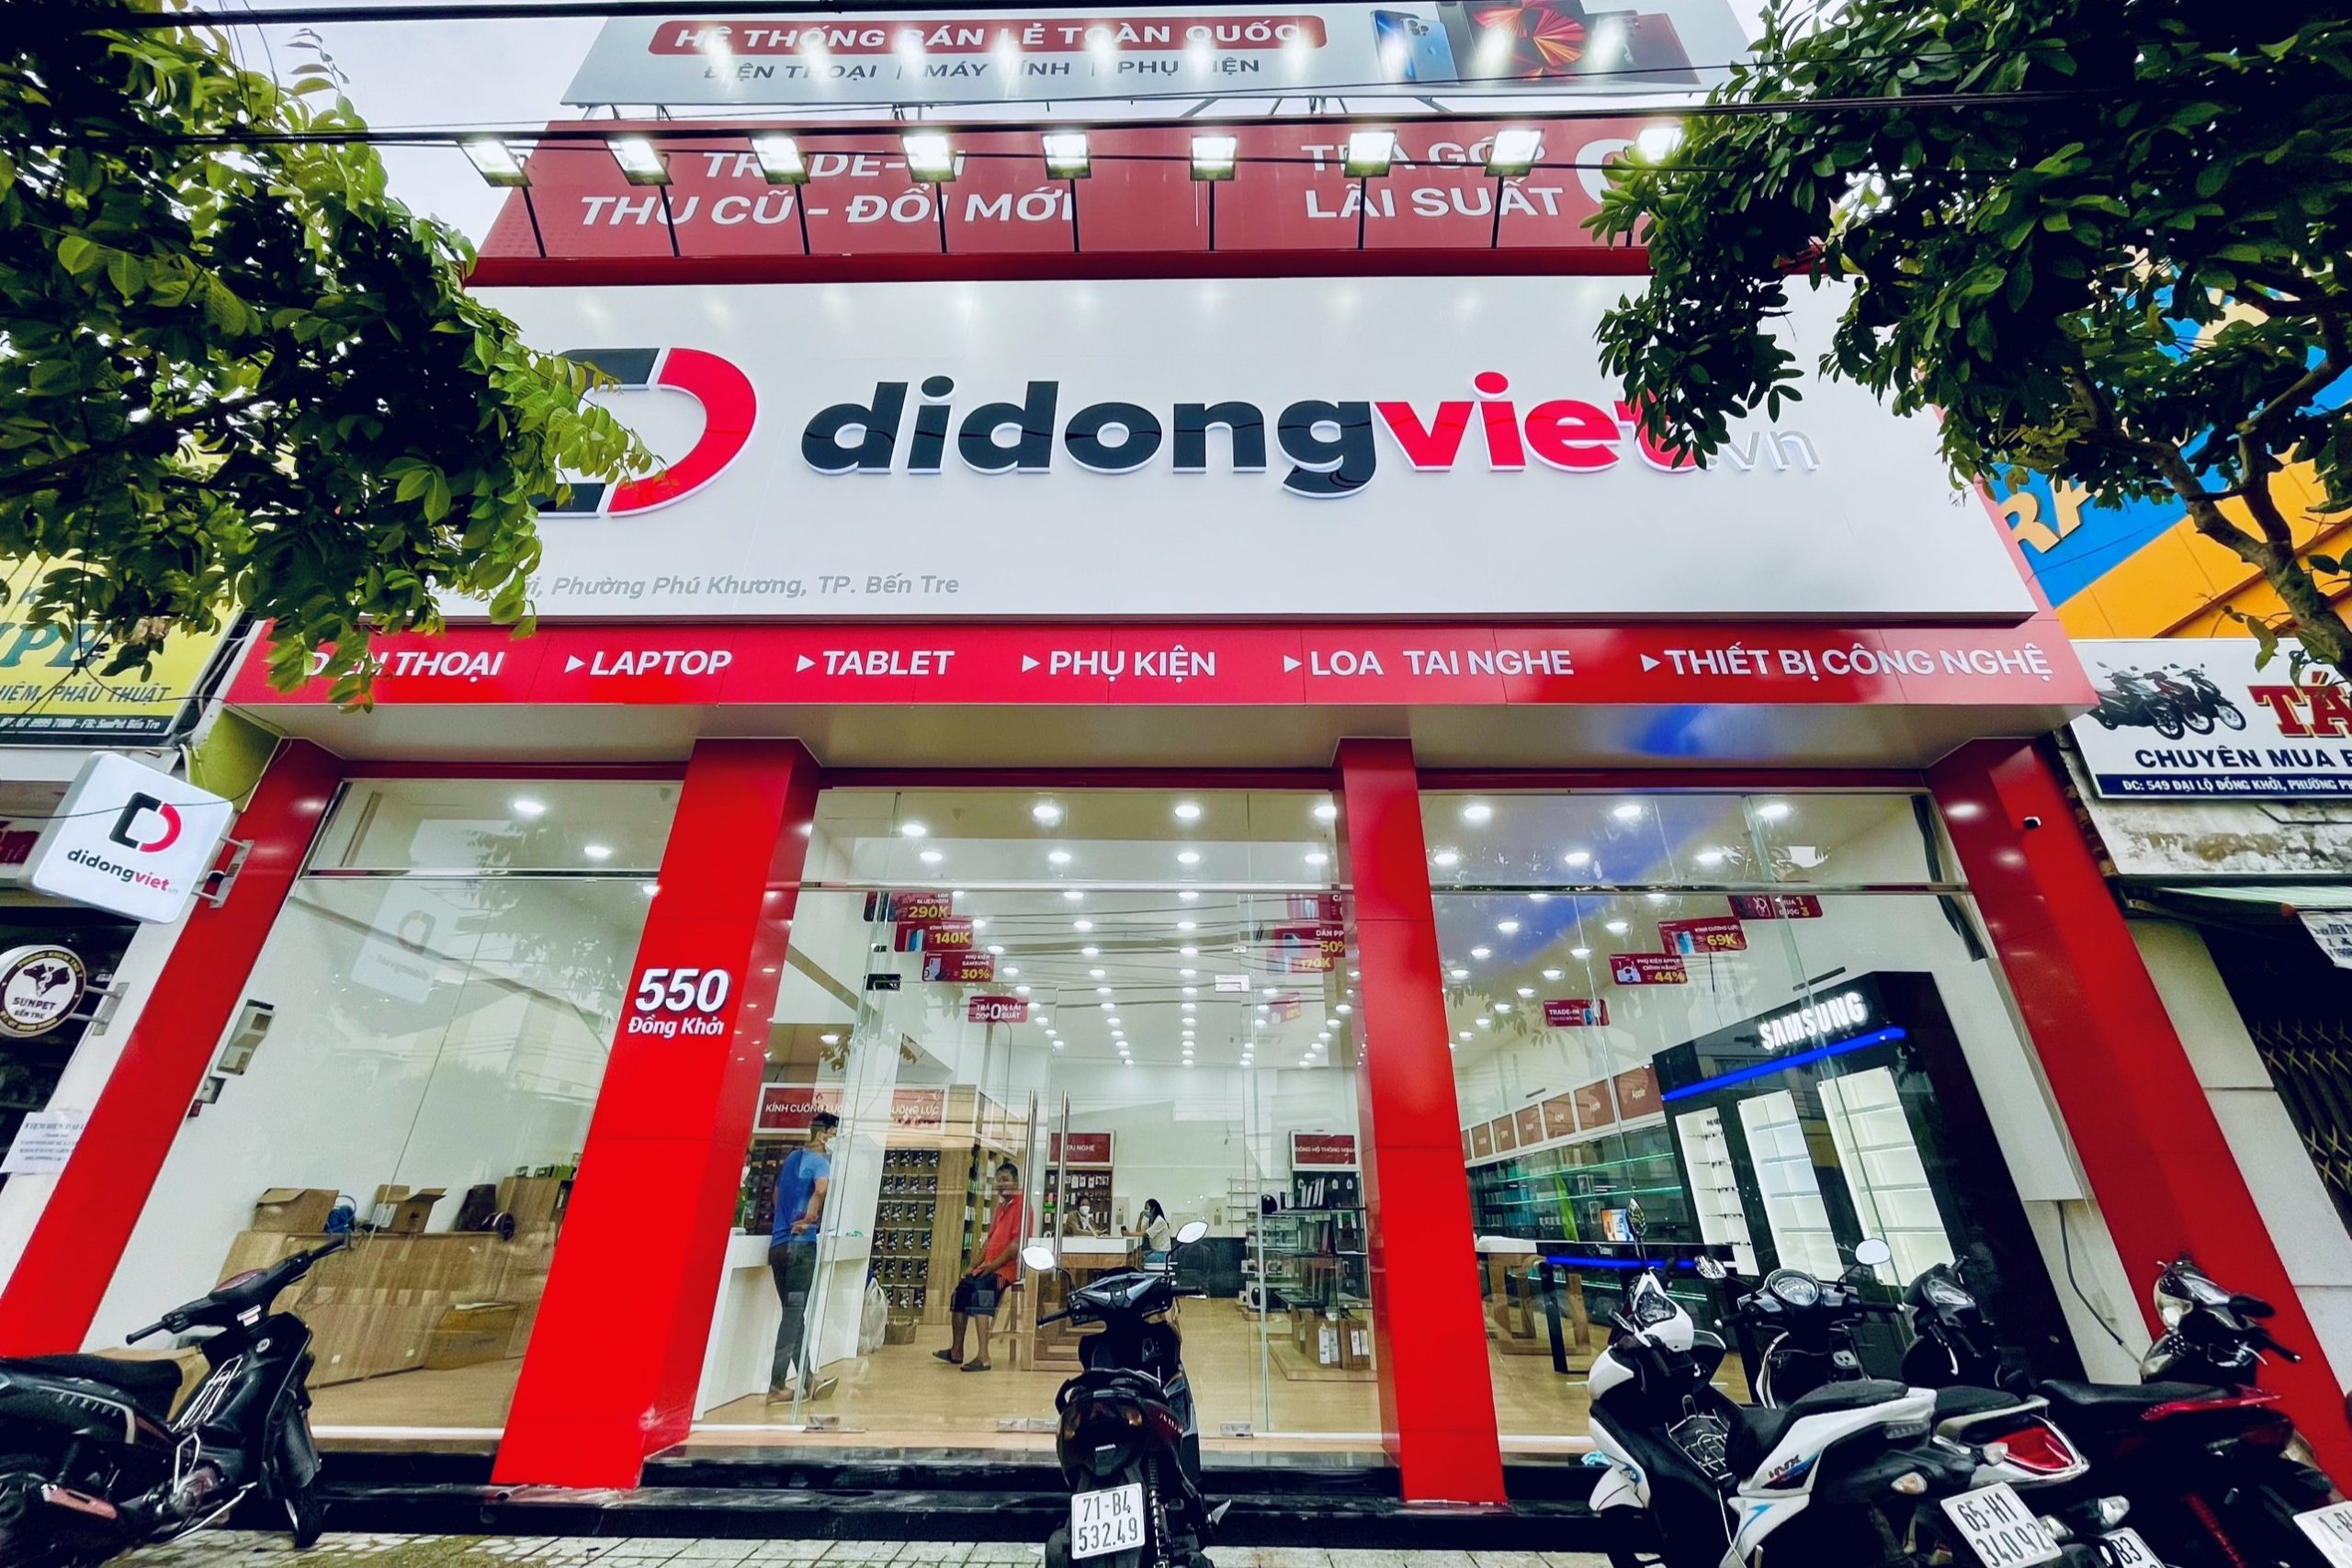 Di Động Việt bắt đầu hành trình chinh phục miền Tây với hai cửa hàng mới tại Tiền Giang và Bến Tre